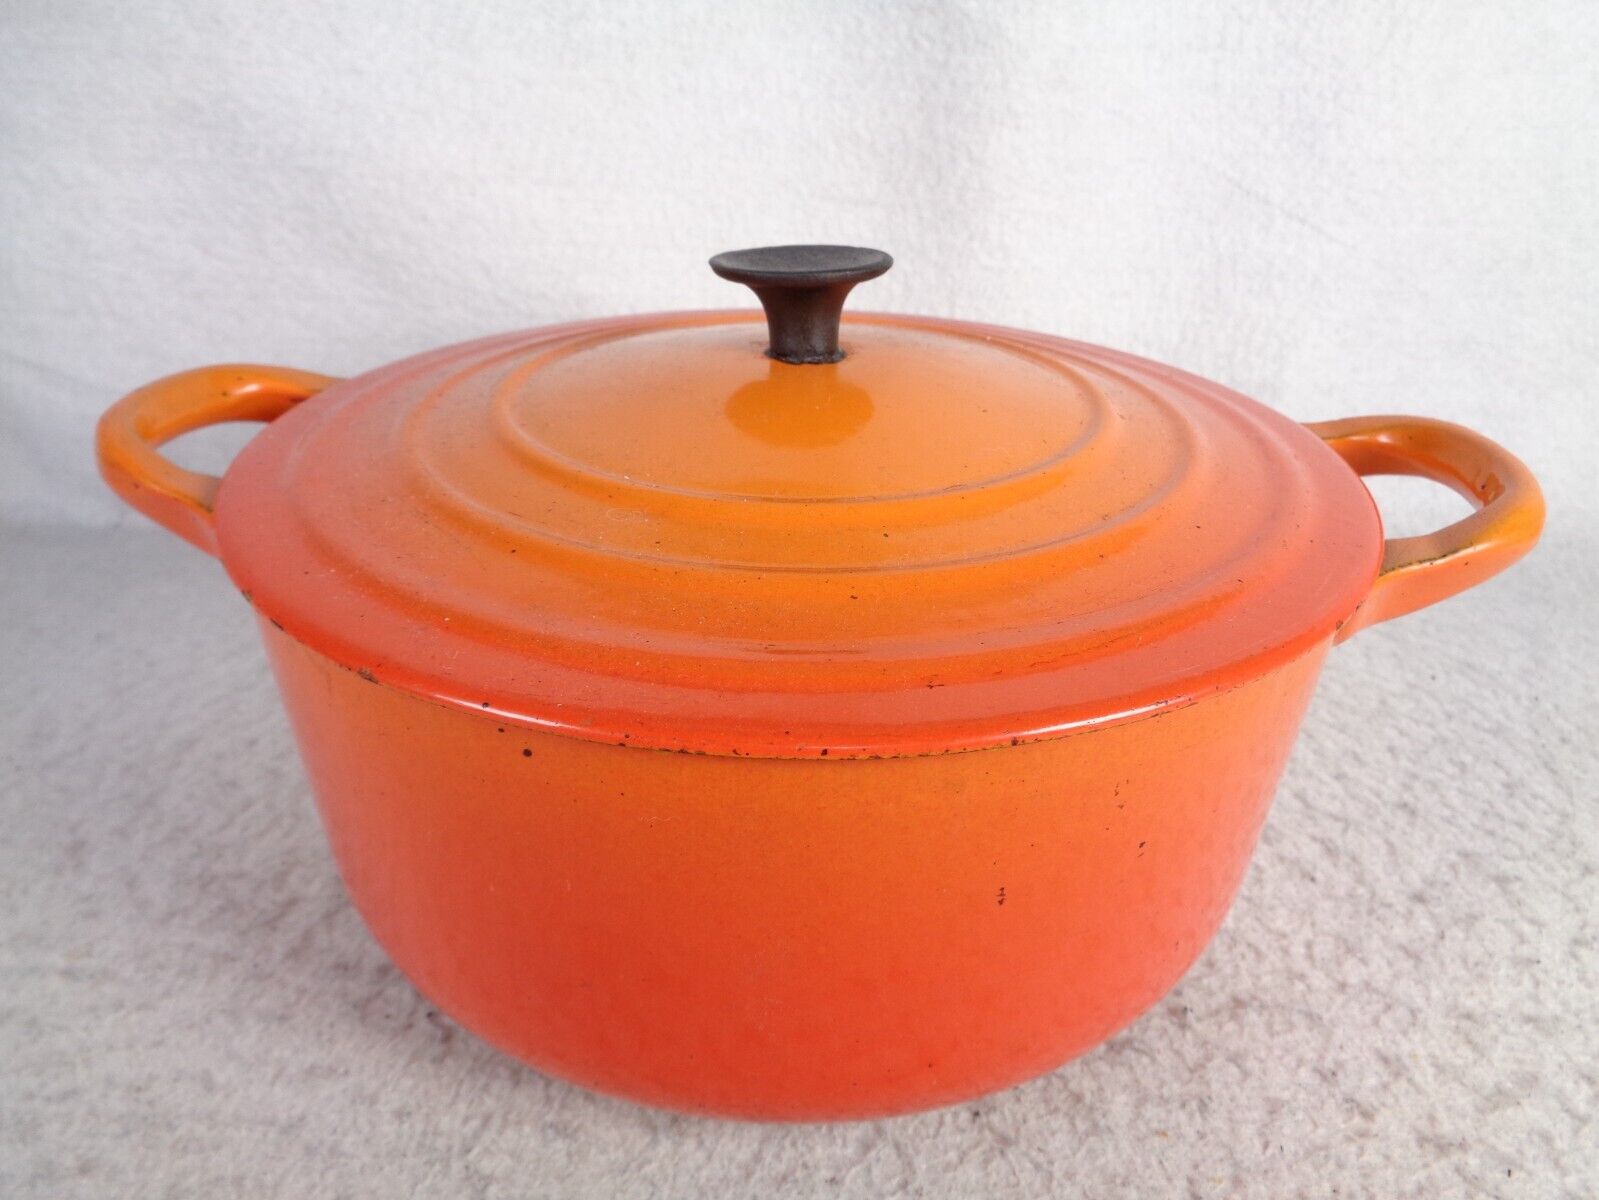 Vtg Le Creuset Orange Round Dutch Oven 2.5 Qt Size C Pot Enameled Cast Iron